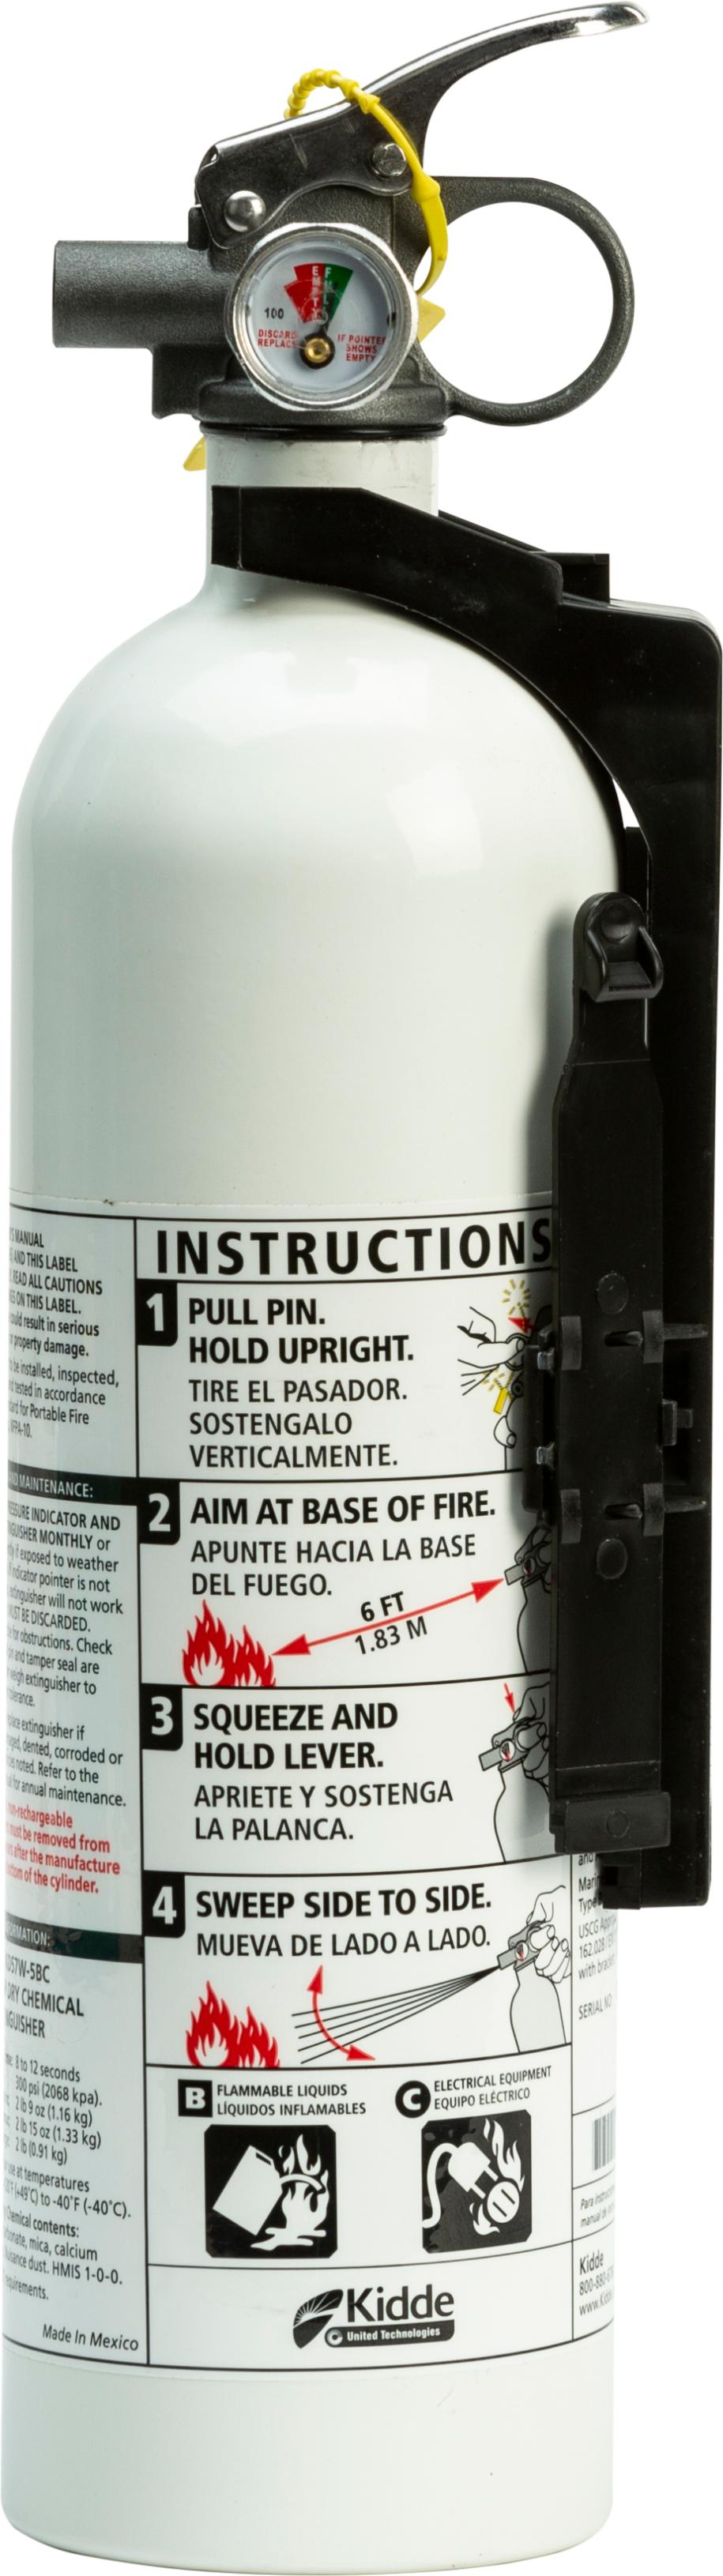 Kidde - Mariner Pwc Fire Extinguisher - 21028230